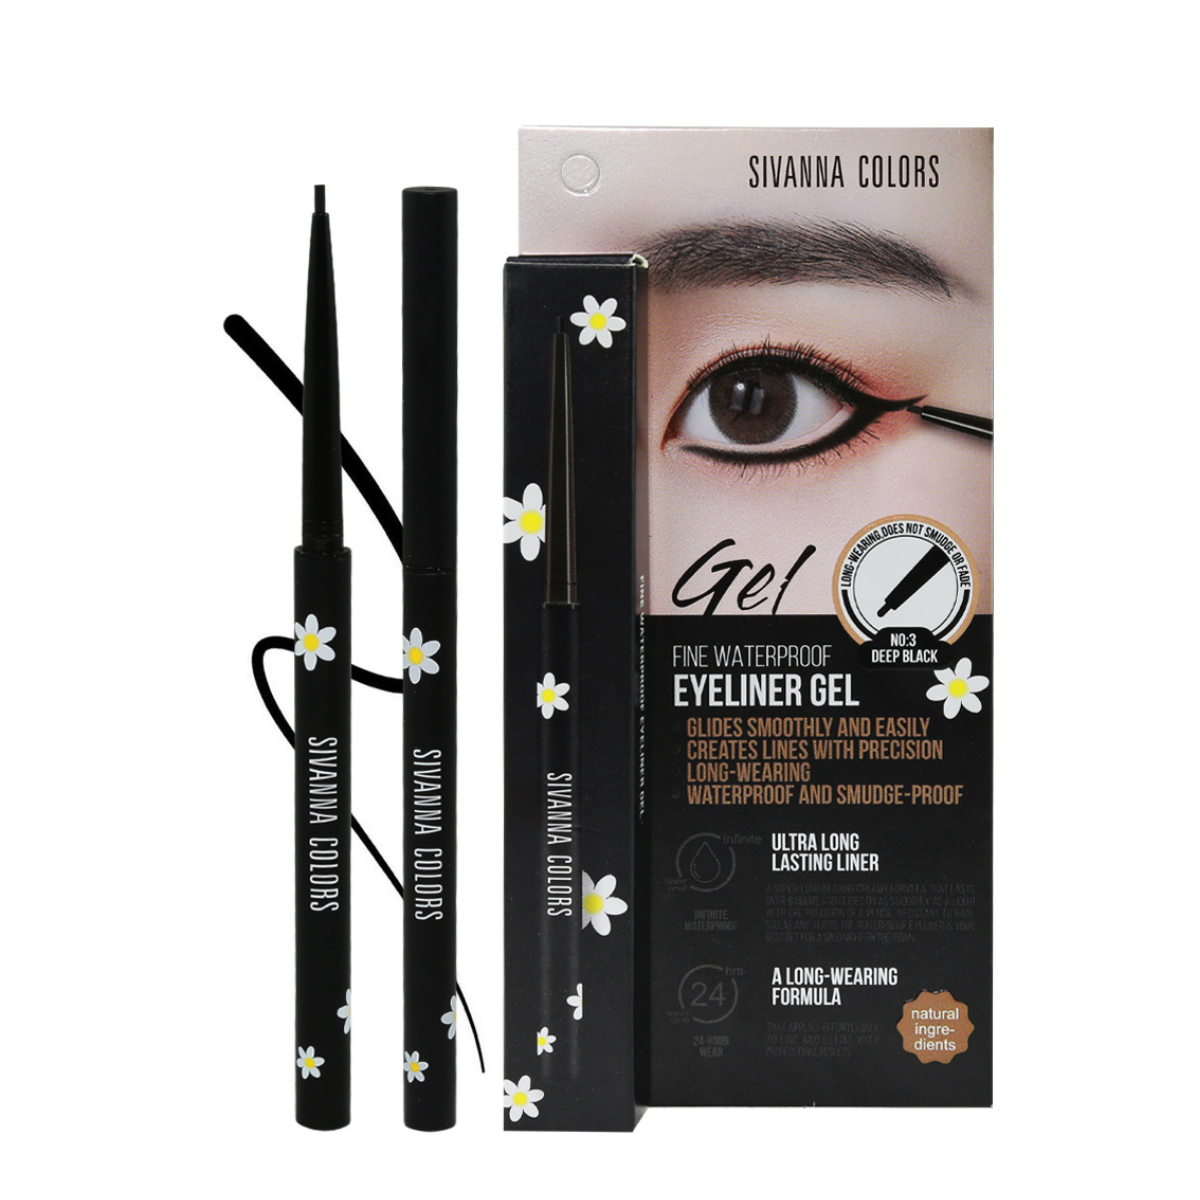 Sivanna Colors Fine Waterproof Eyeliner Gel - Ultra Long Lasting Liner - Deep Black